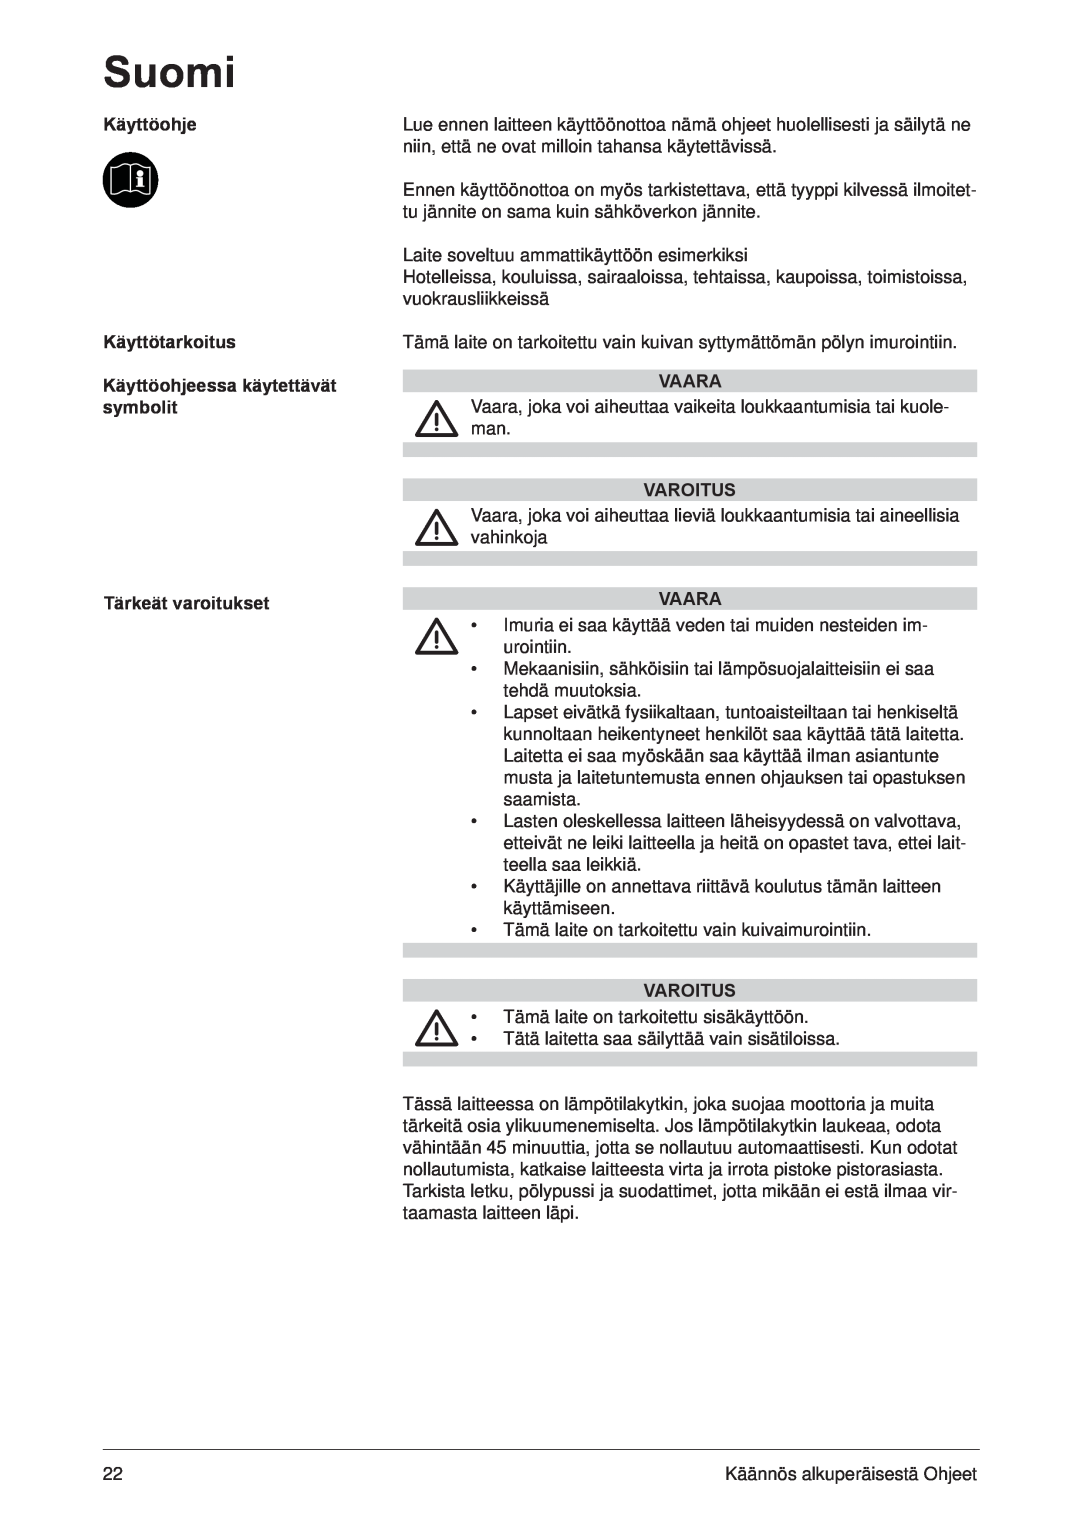 Nilfisk-ALTO 107402849 C manual Käyttöohje Käyttötarkoitus, Käyttöohjeessa käytettävät symbolit, Tärkeät varoitukset, Vaara 